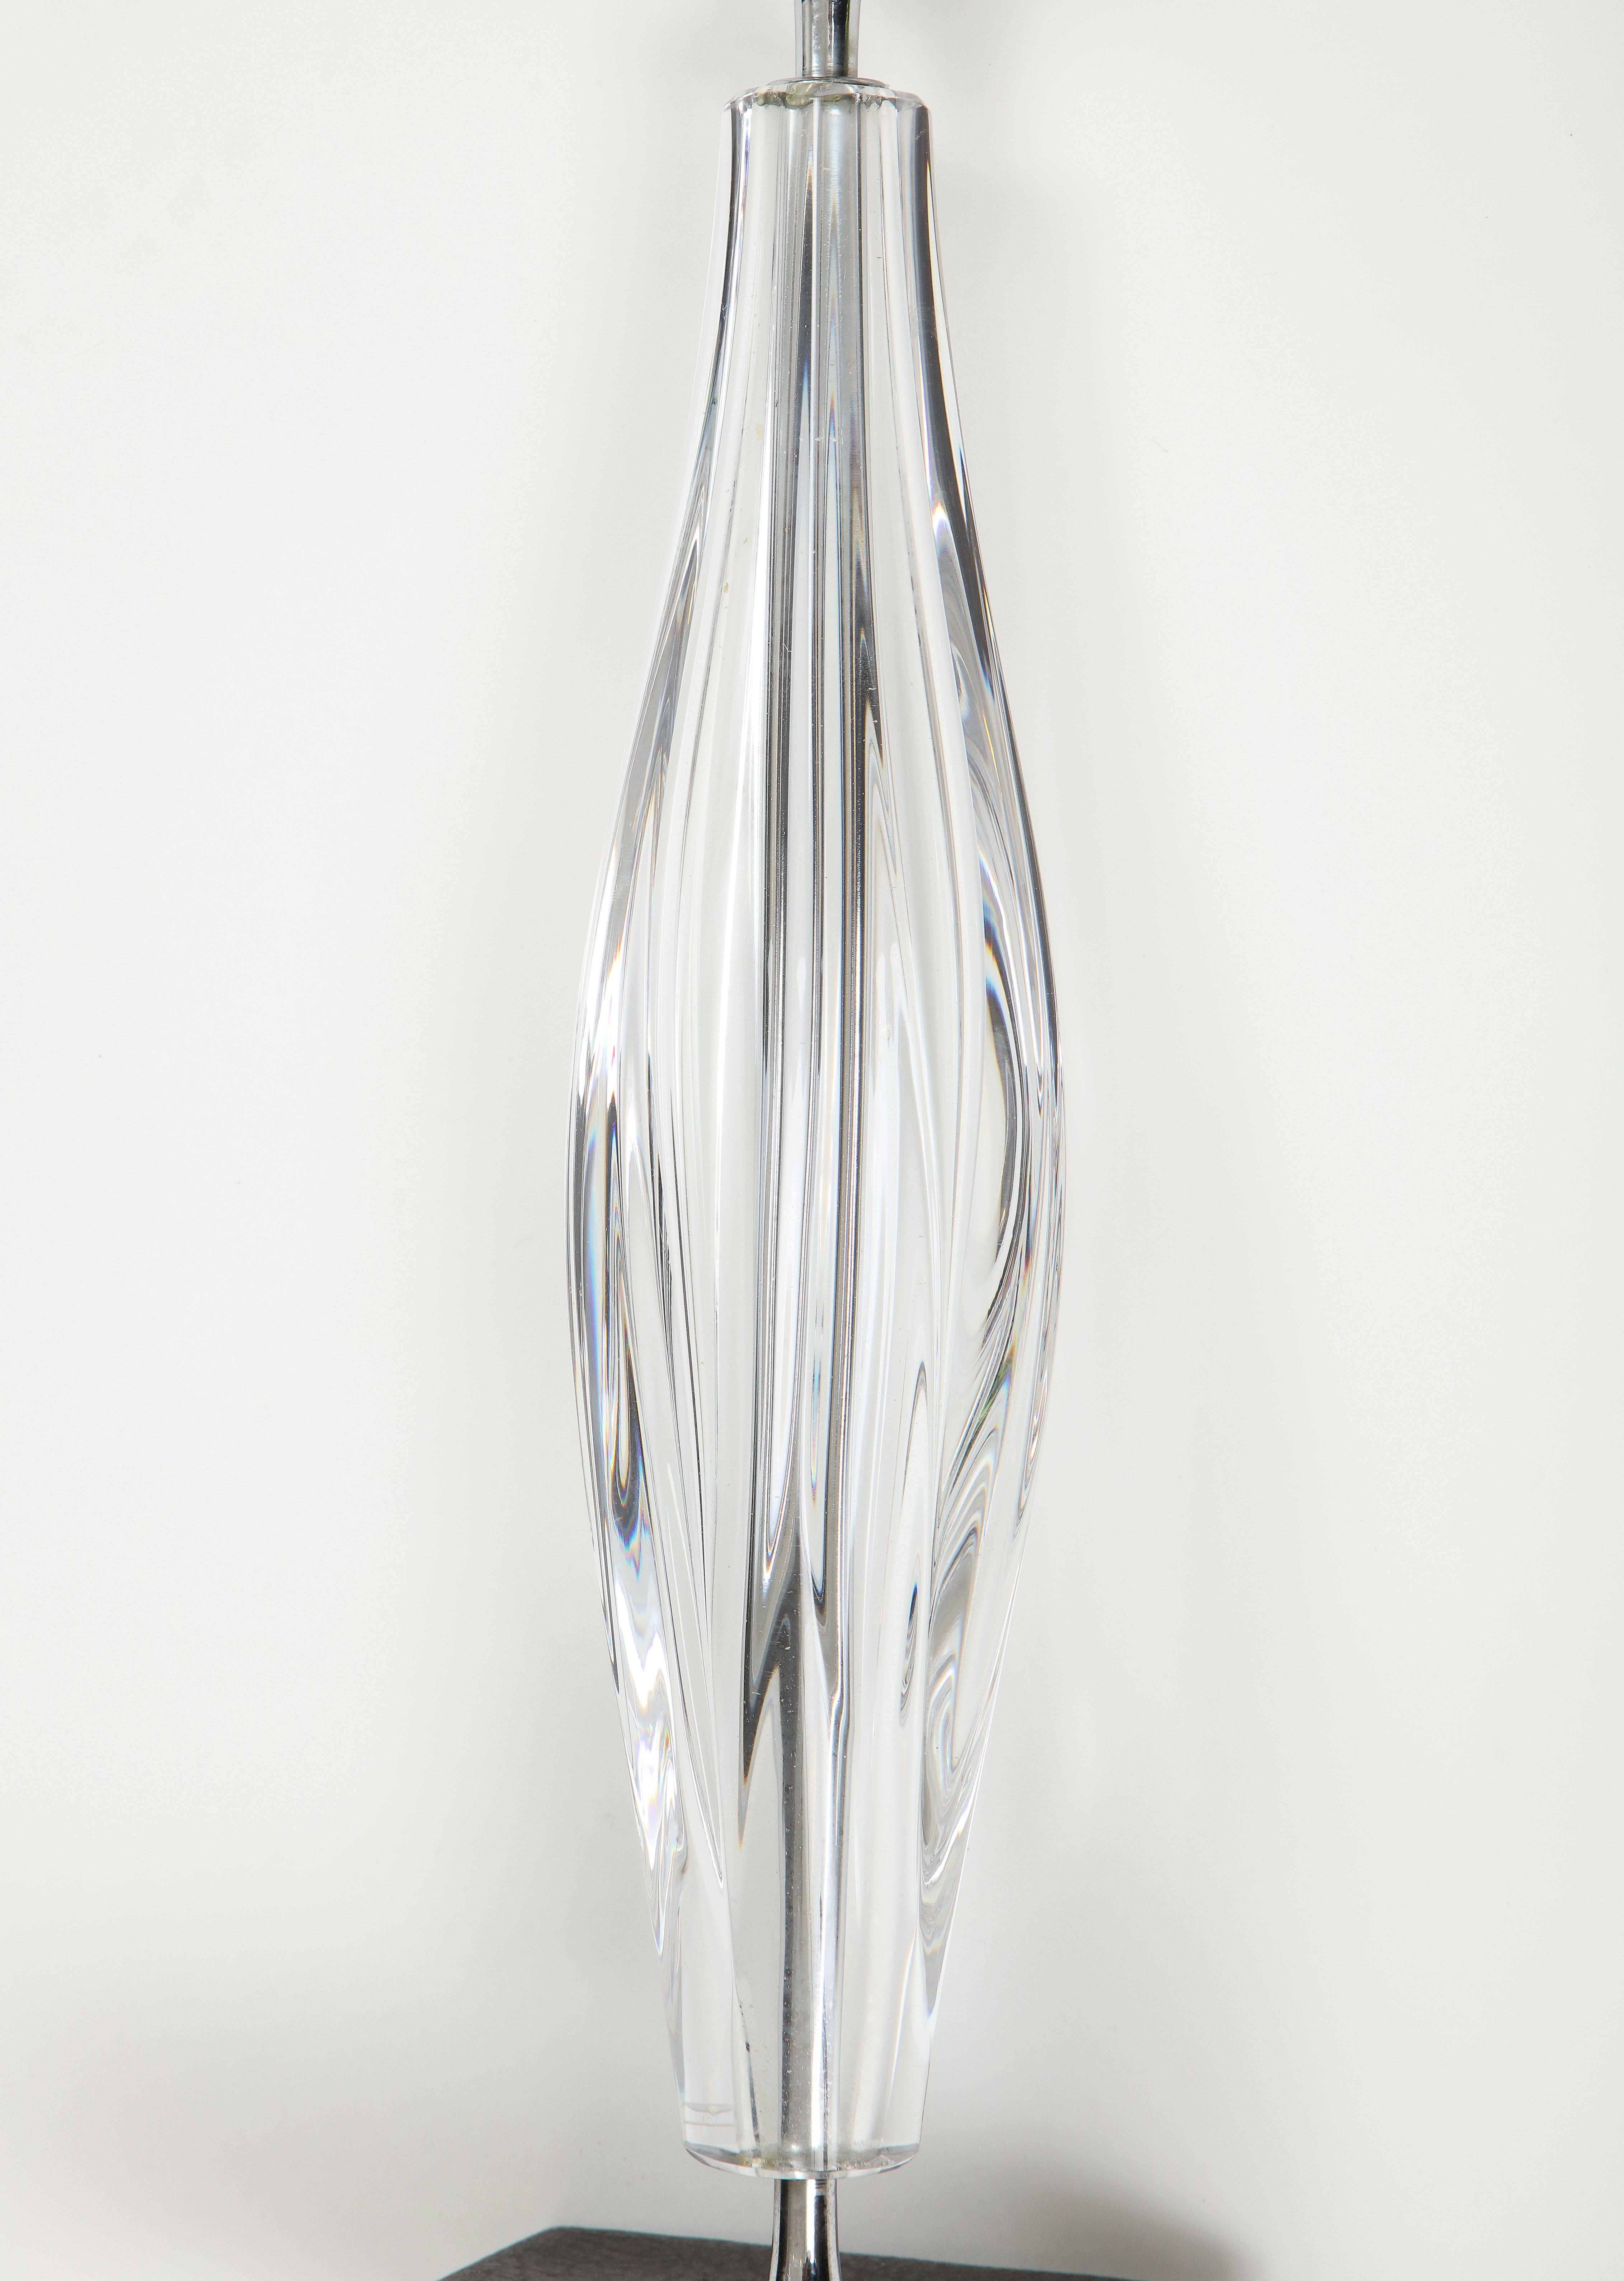 Lampe en cristal signée Daum
base en similicuir
réadaptés pour être utilisés aux États-Unis.
  